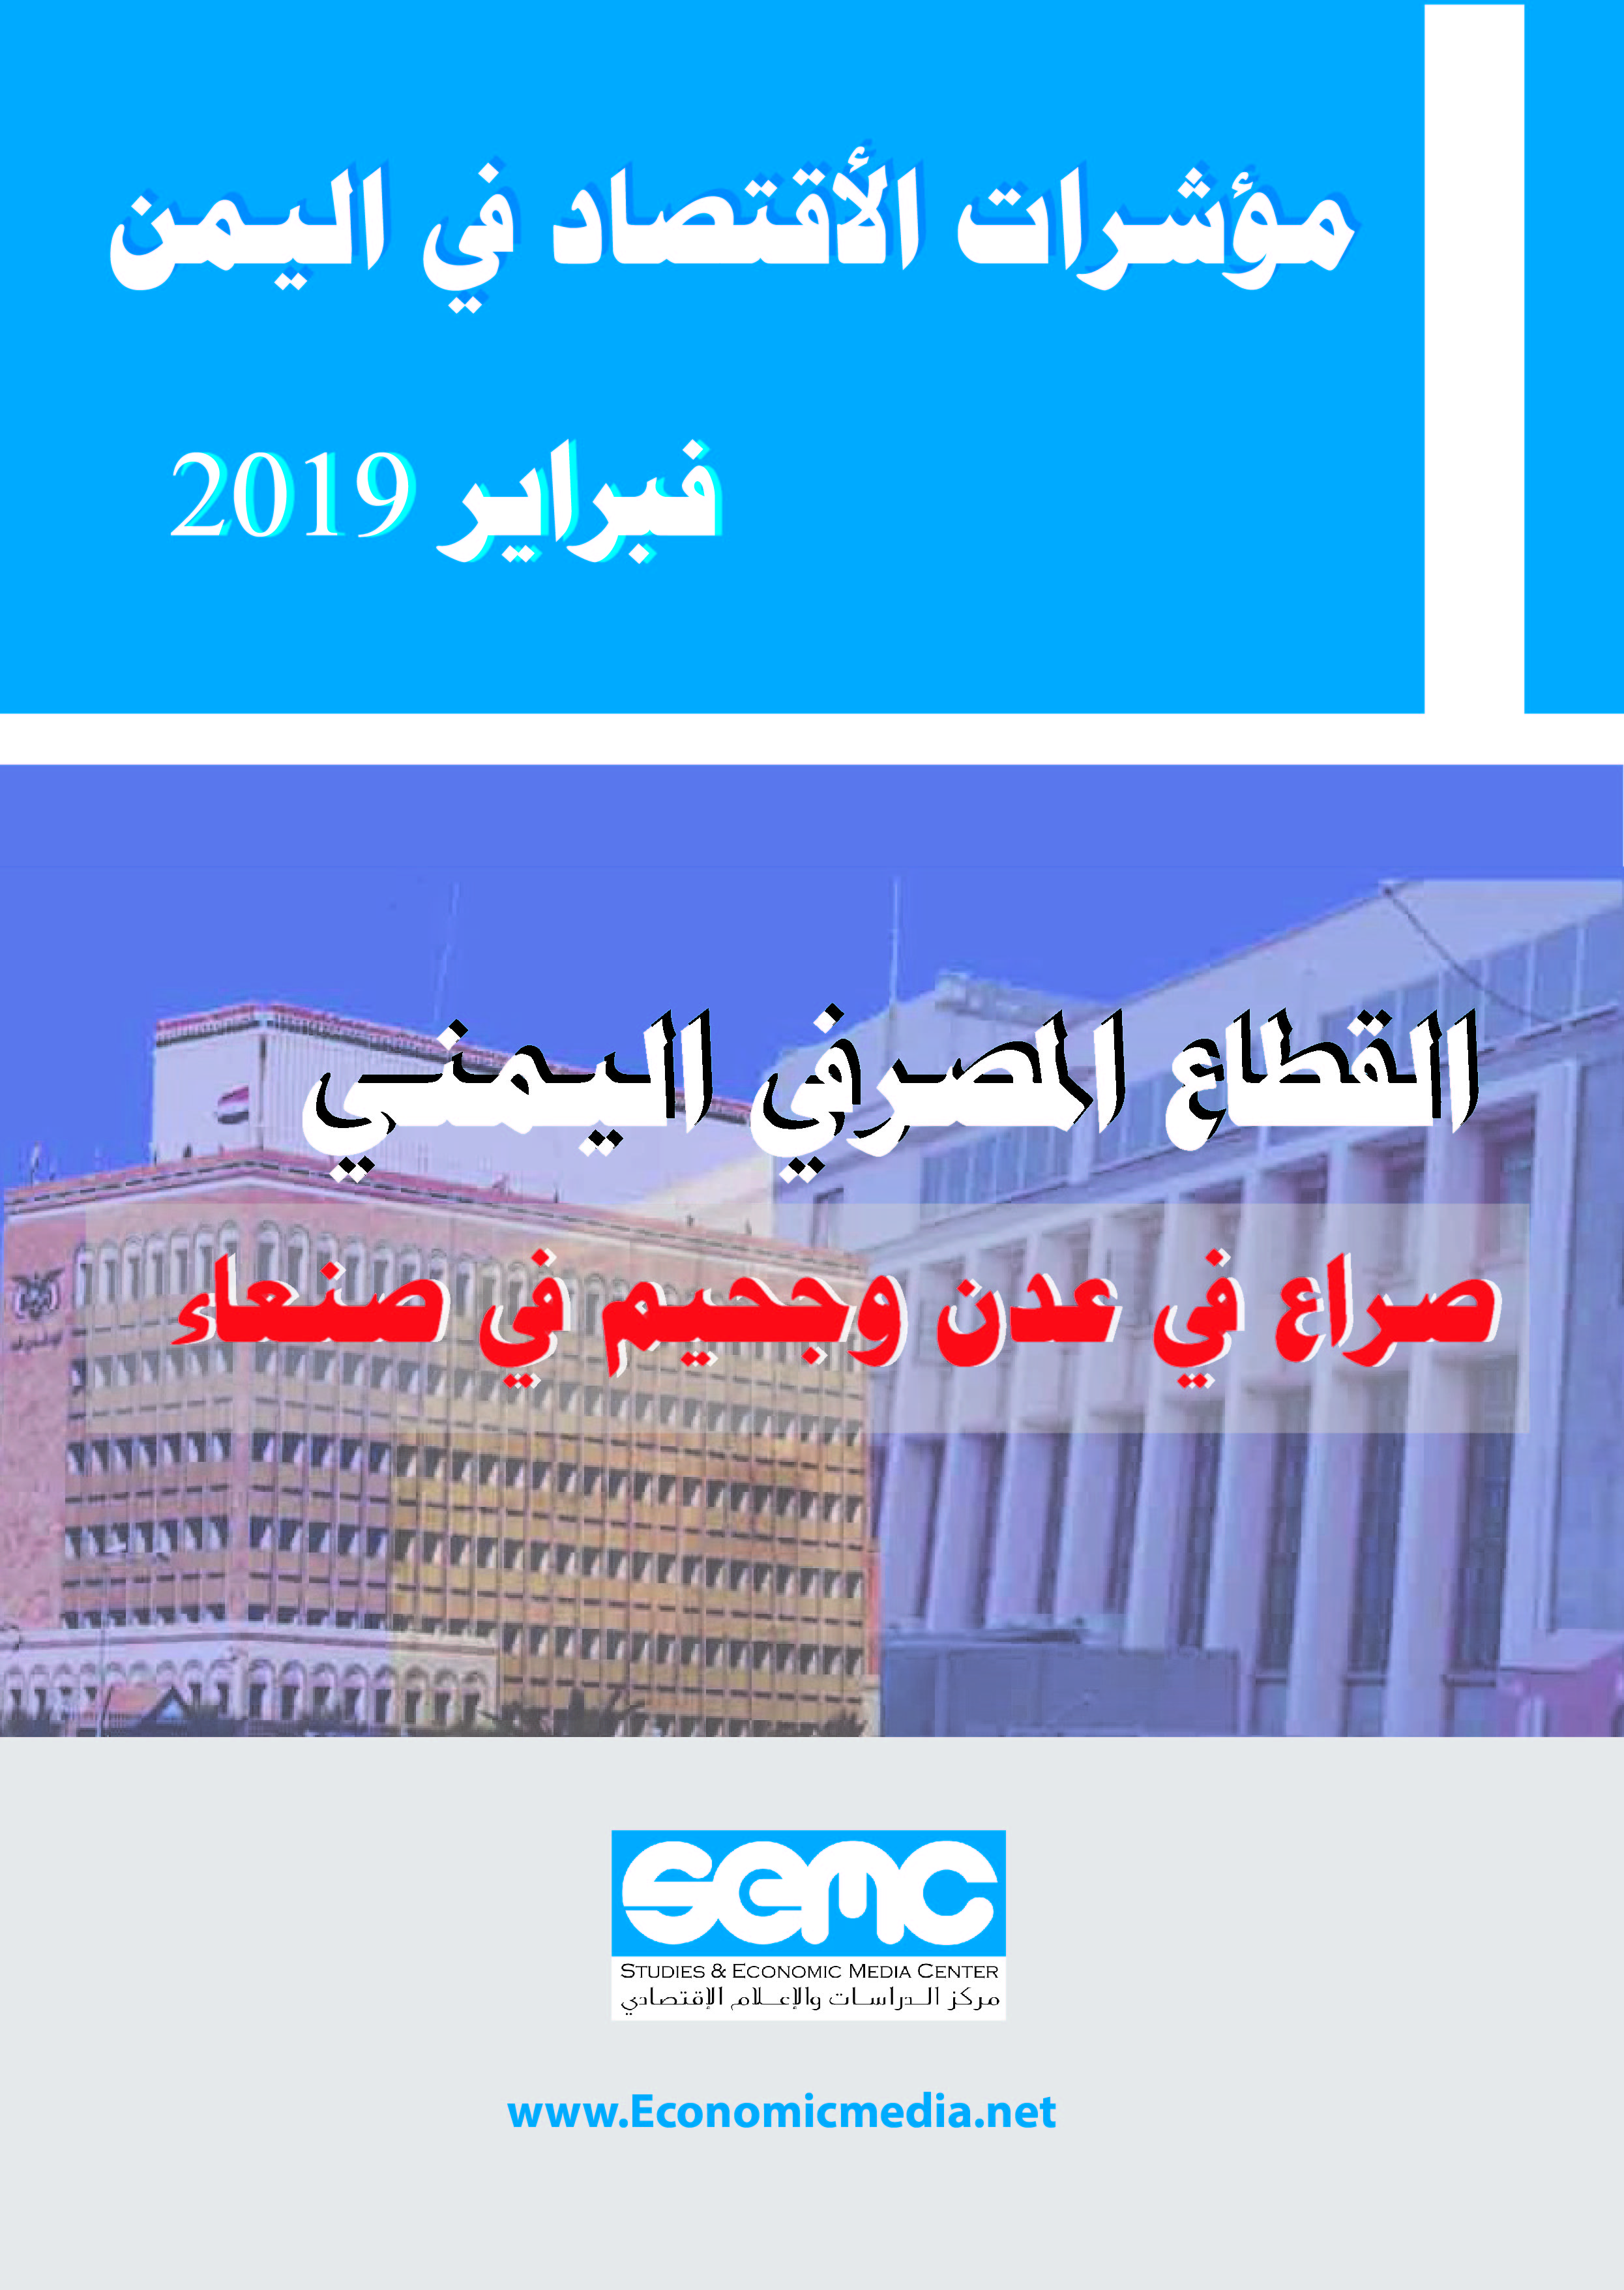 الاعلام الاقتصادي يصدر مؤشرات الاقتصاد اليمني